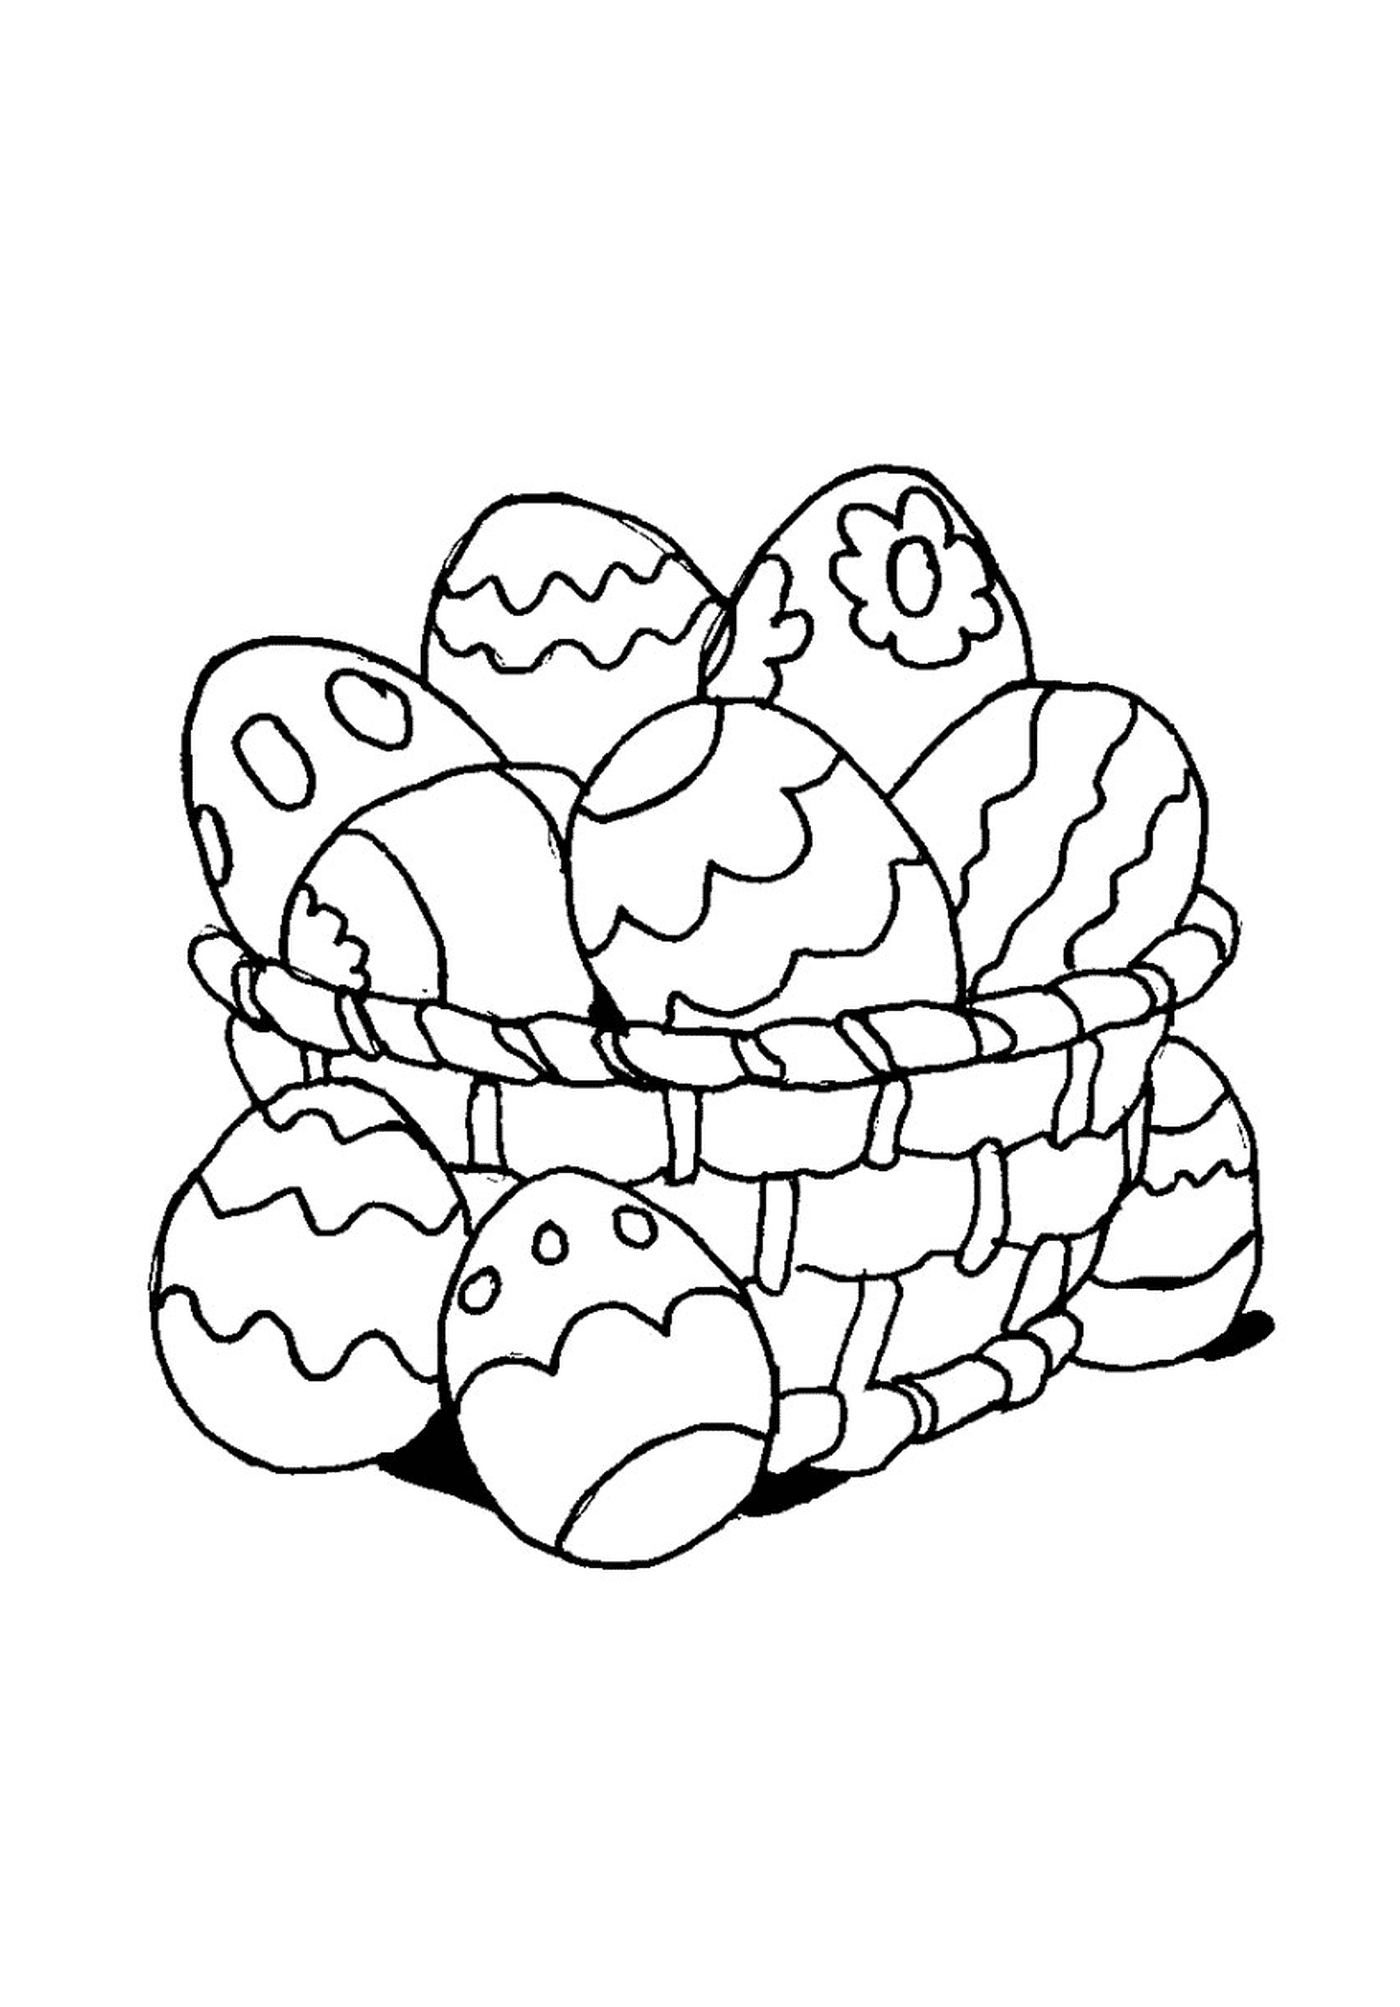  ईस्टर के अंडे से भरी हुई टोकरी 